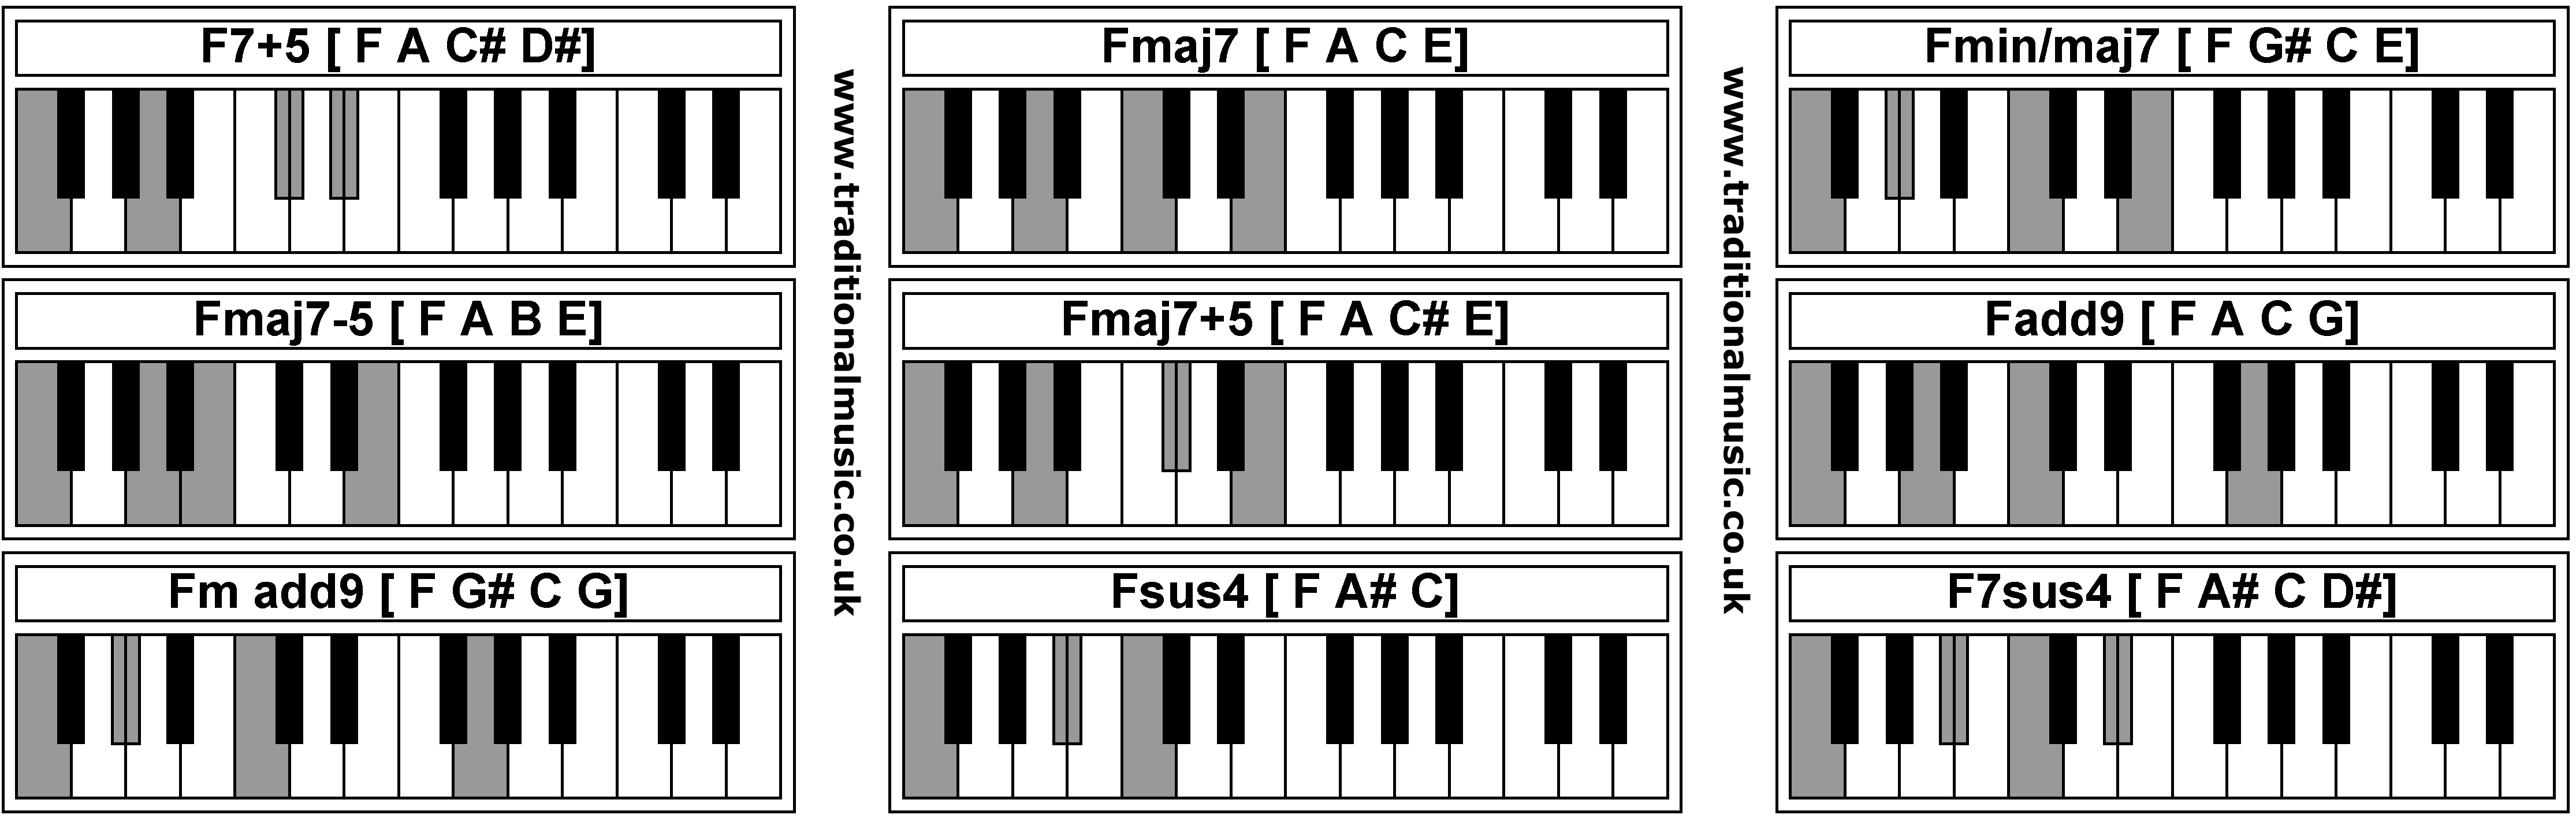 Piano Chords - F7+5  Fmaj7  Fmin/maj7  Fmaj7-5  Fmaj7+5  Fadd9  Fm add9  Fsus4  F7sus4